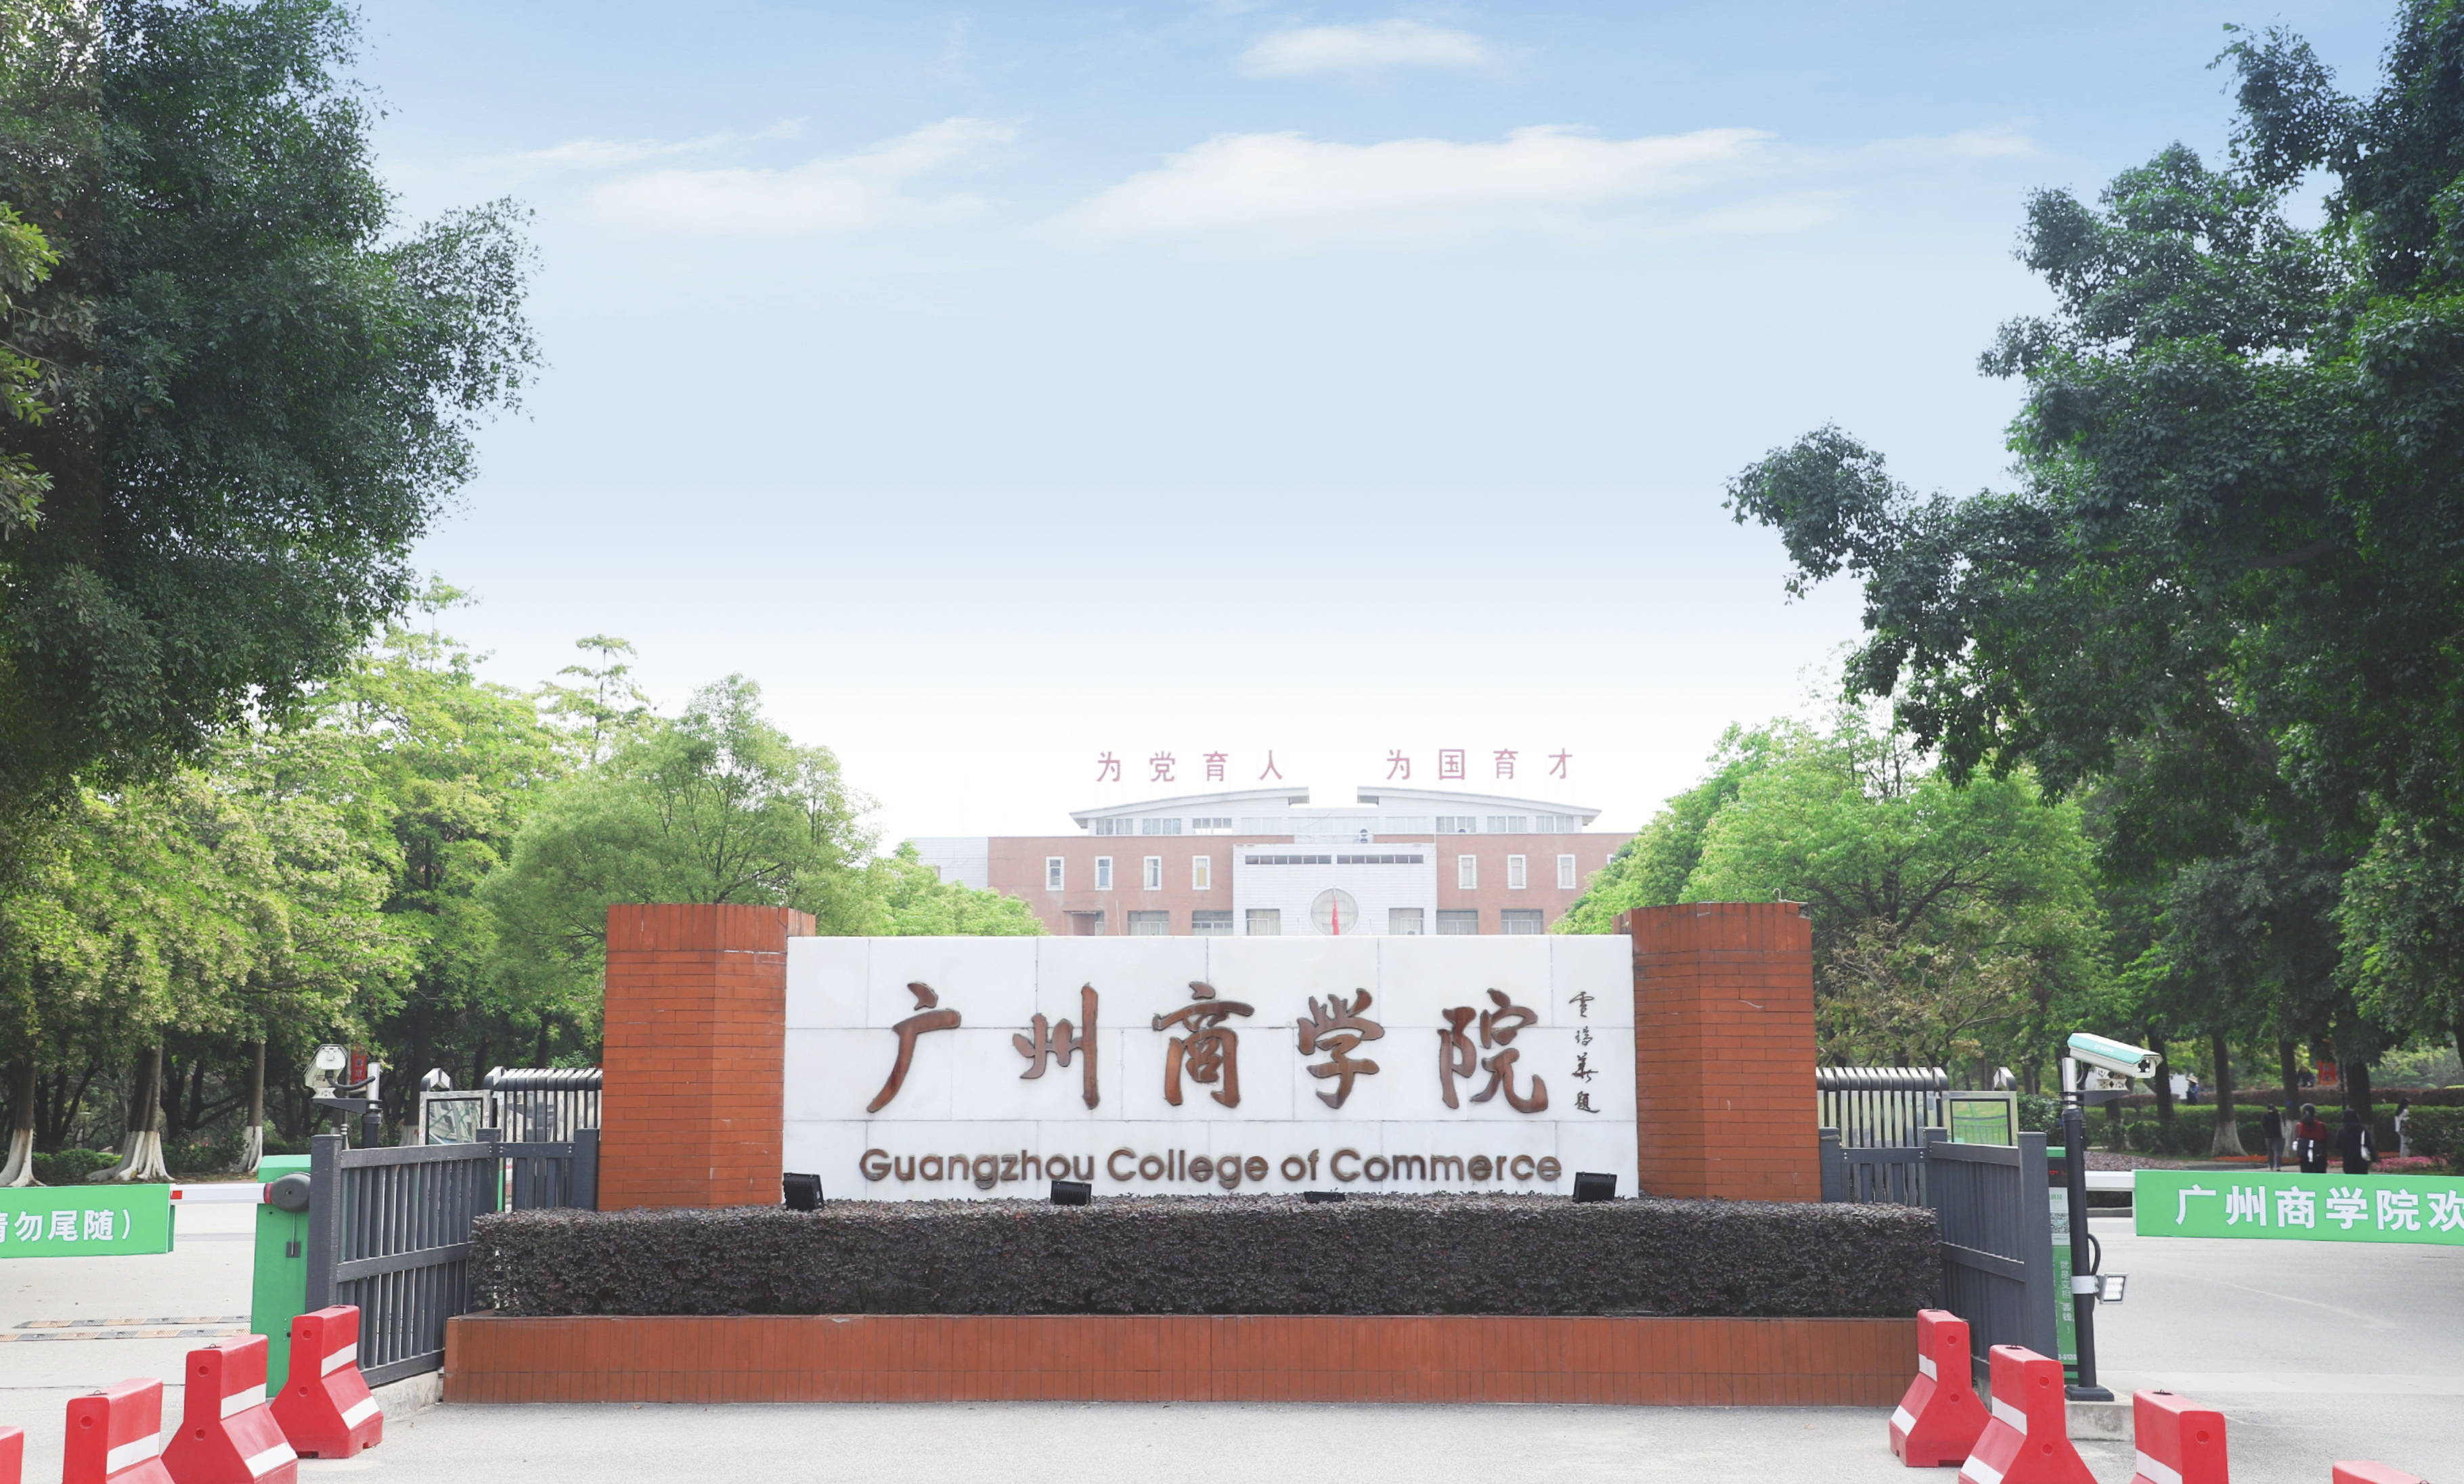 这是广州商学院教育事业发展史上的一个重要里程碑,标志着广商硕士